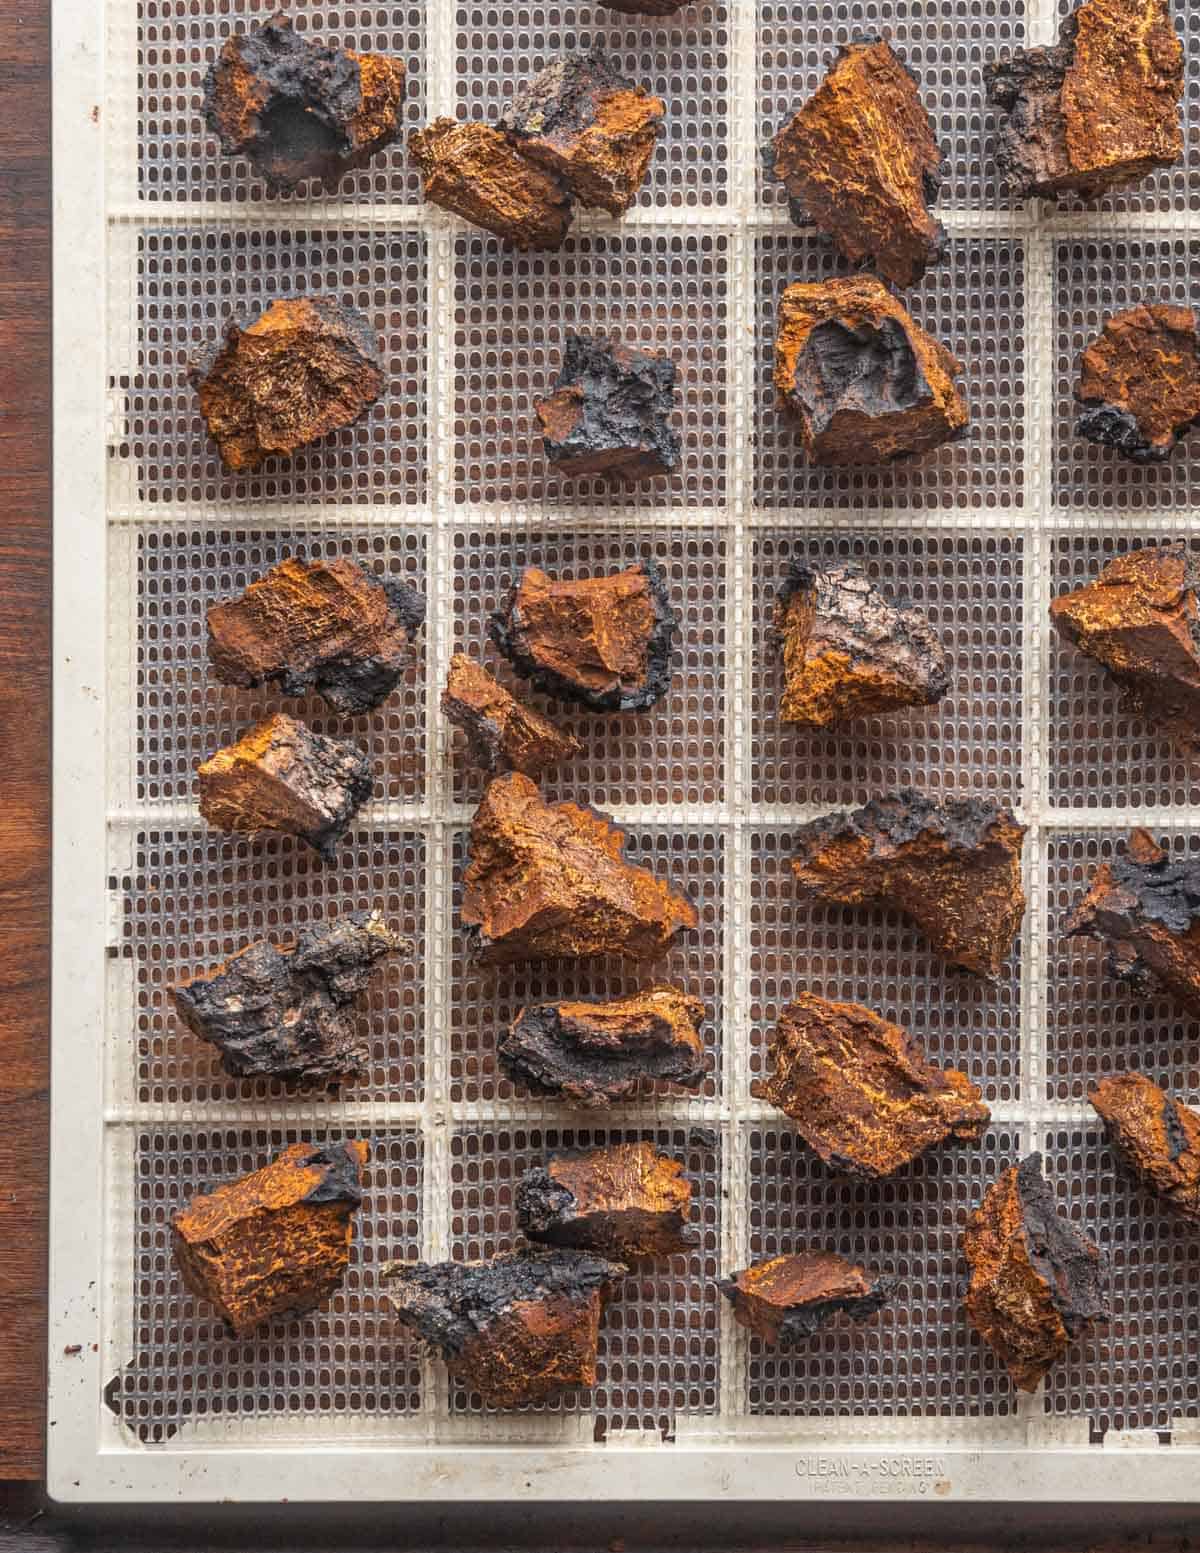 Pieces of chaga mushroom on a dehydrator tray drying. 